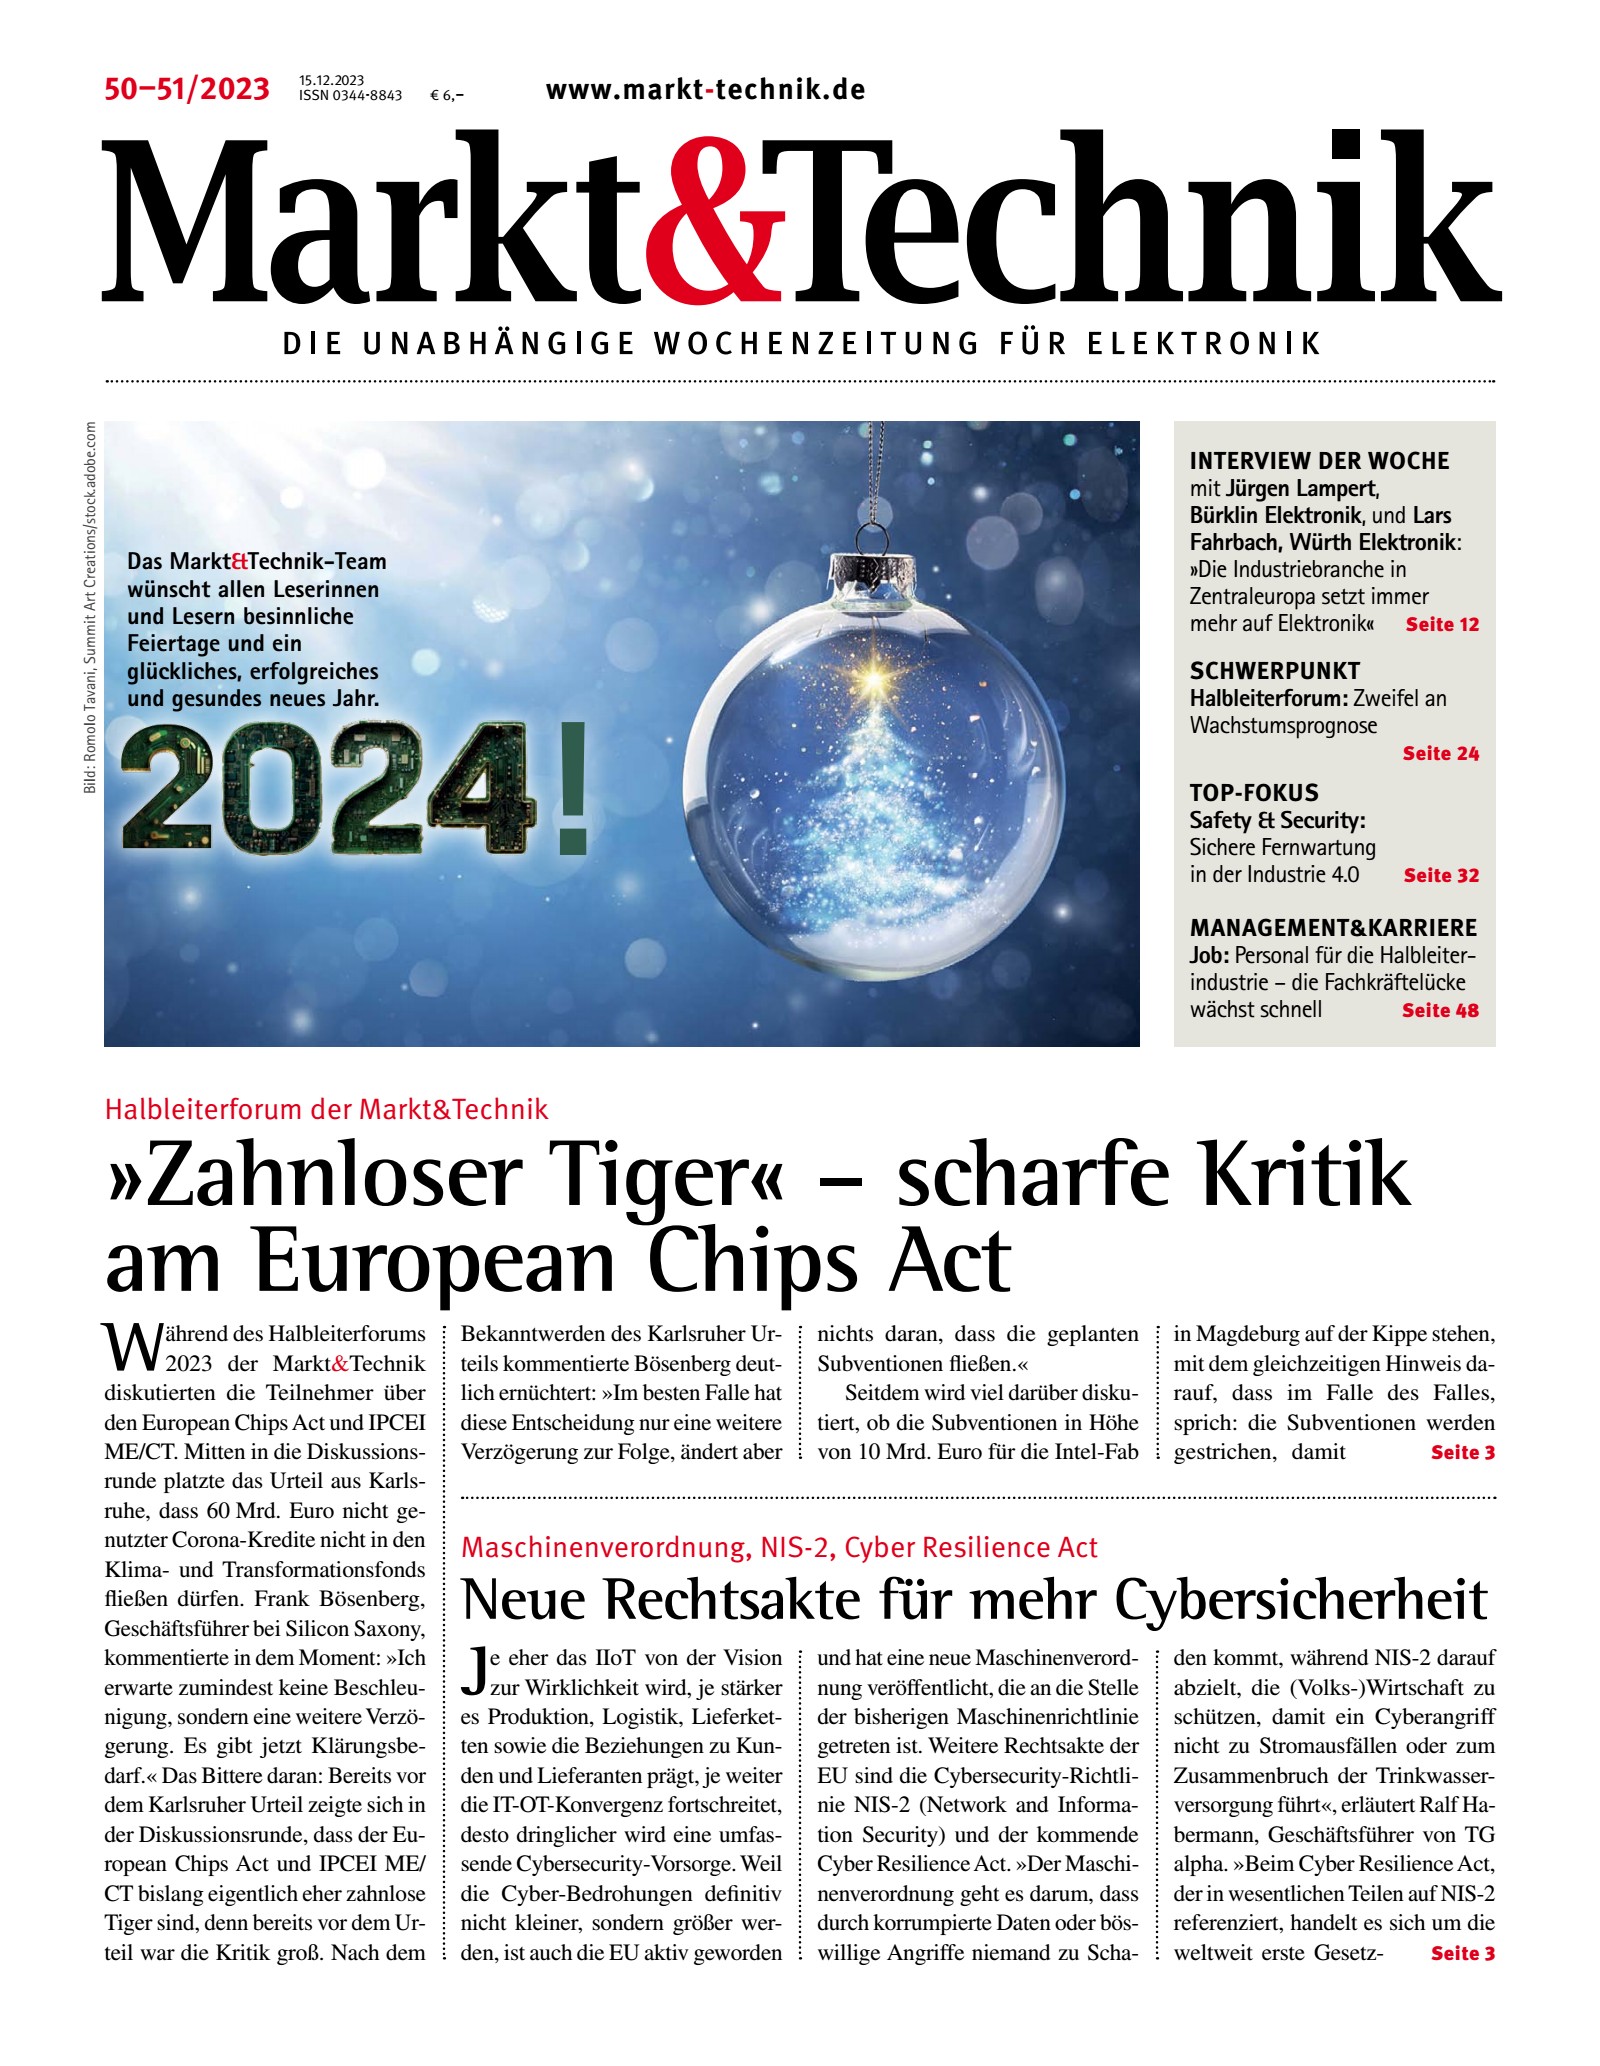 Markt&Technik 50+51/23 Digital